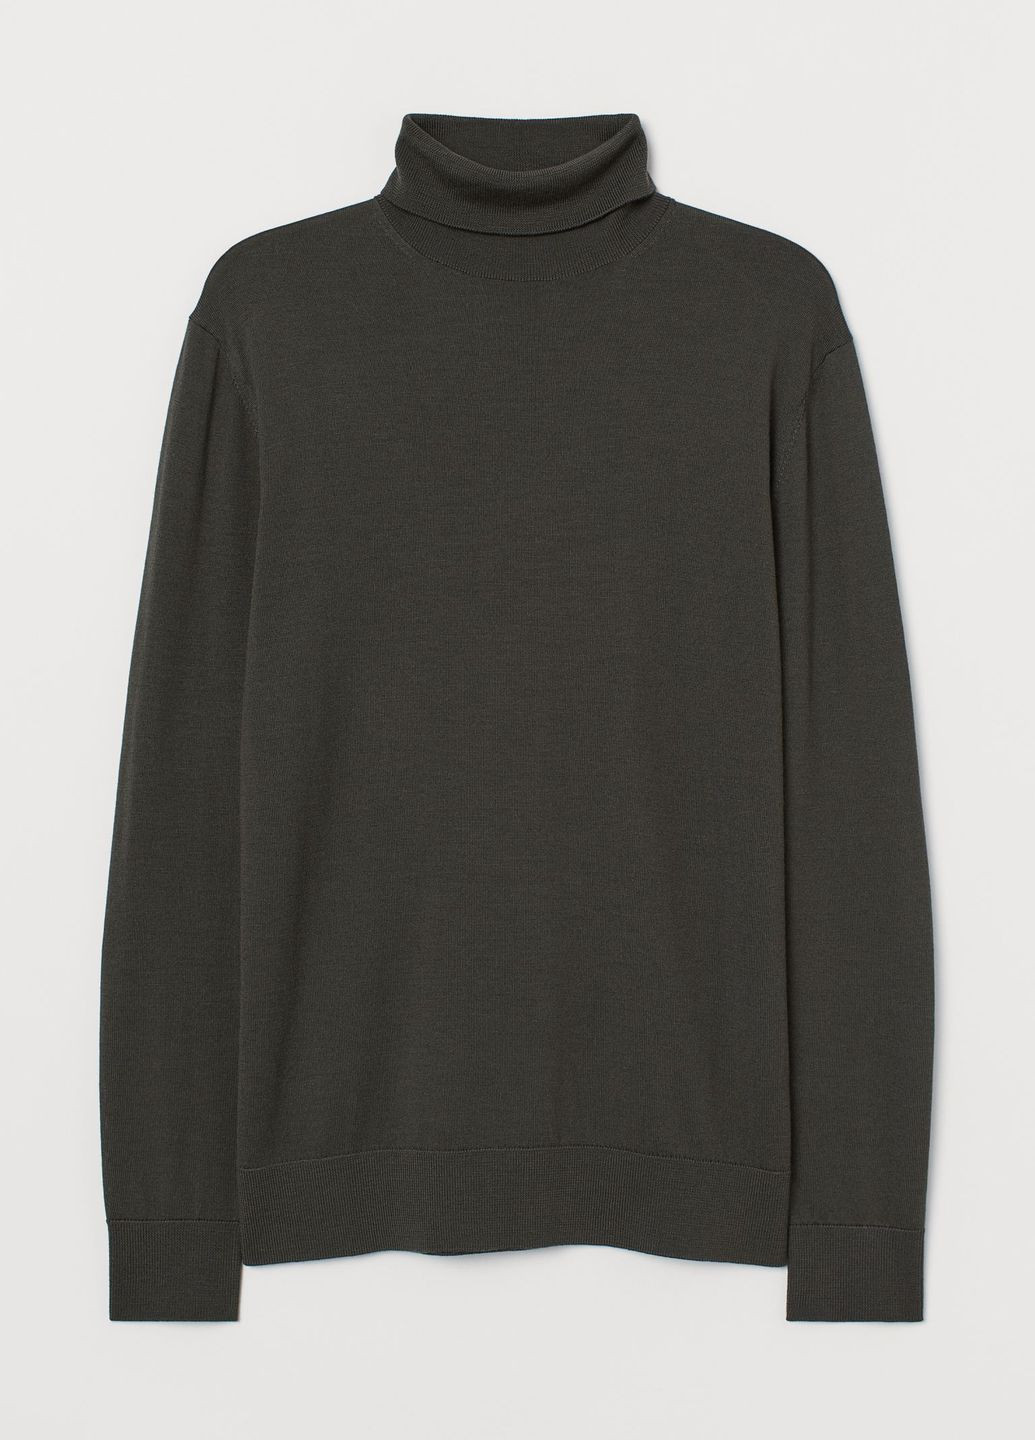 Темно-зеленый демисезонный свитер premium selection из мериносовой шерсти темно-зеленый повседневный демисезон джемпер H&M